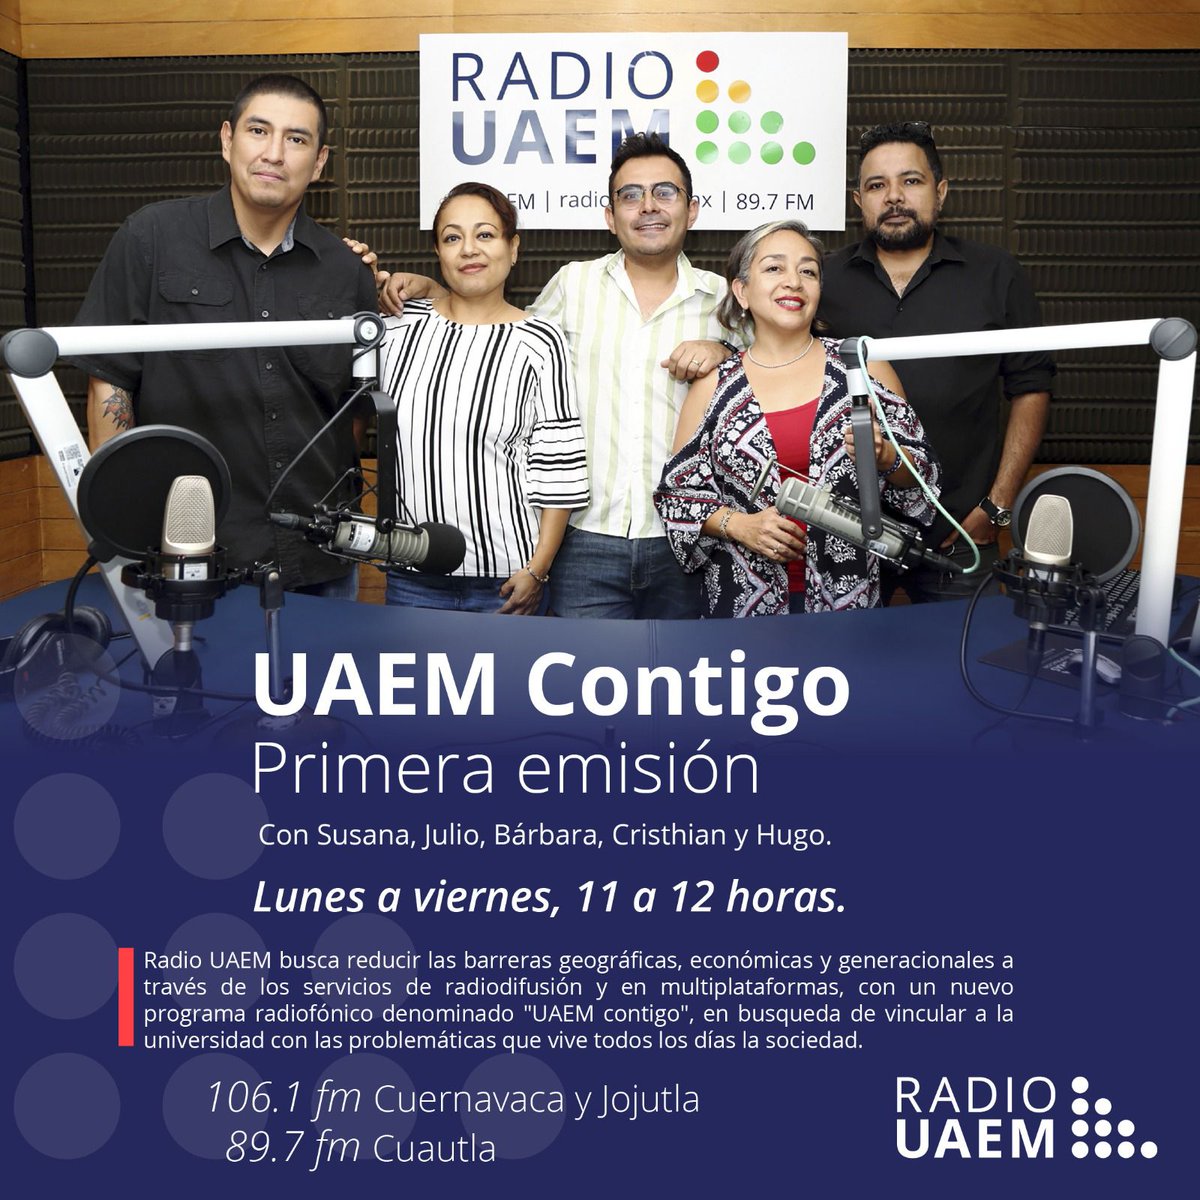 Escucha de lunes a viernes de 11 a 12 horas 'UAEM Contigo' desde @radiouaem | Frecuencias 106.1 en Cuernavaca y Jojutla, y 89.7 en Cuautla | Visita la página radio.uaem.mx | #SomosRadioPúblicaUniversitaria📻#SomosUAEM